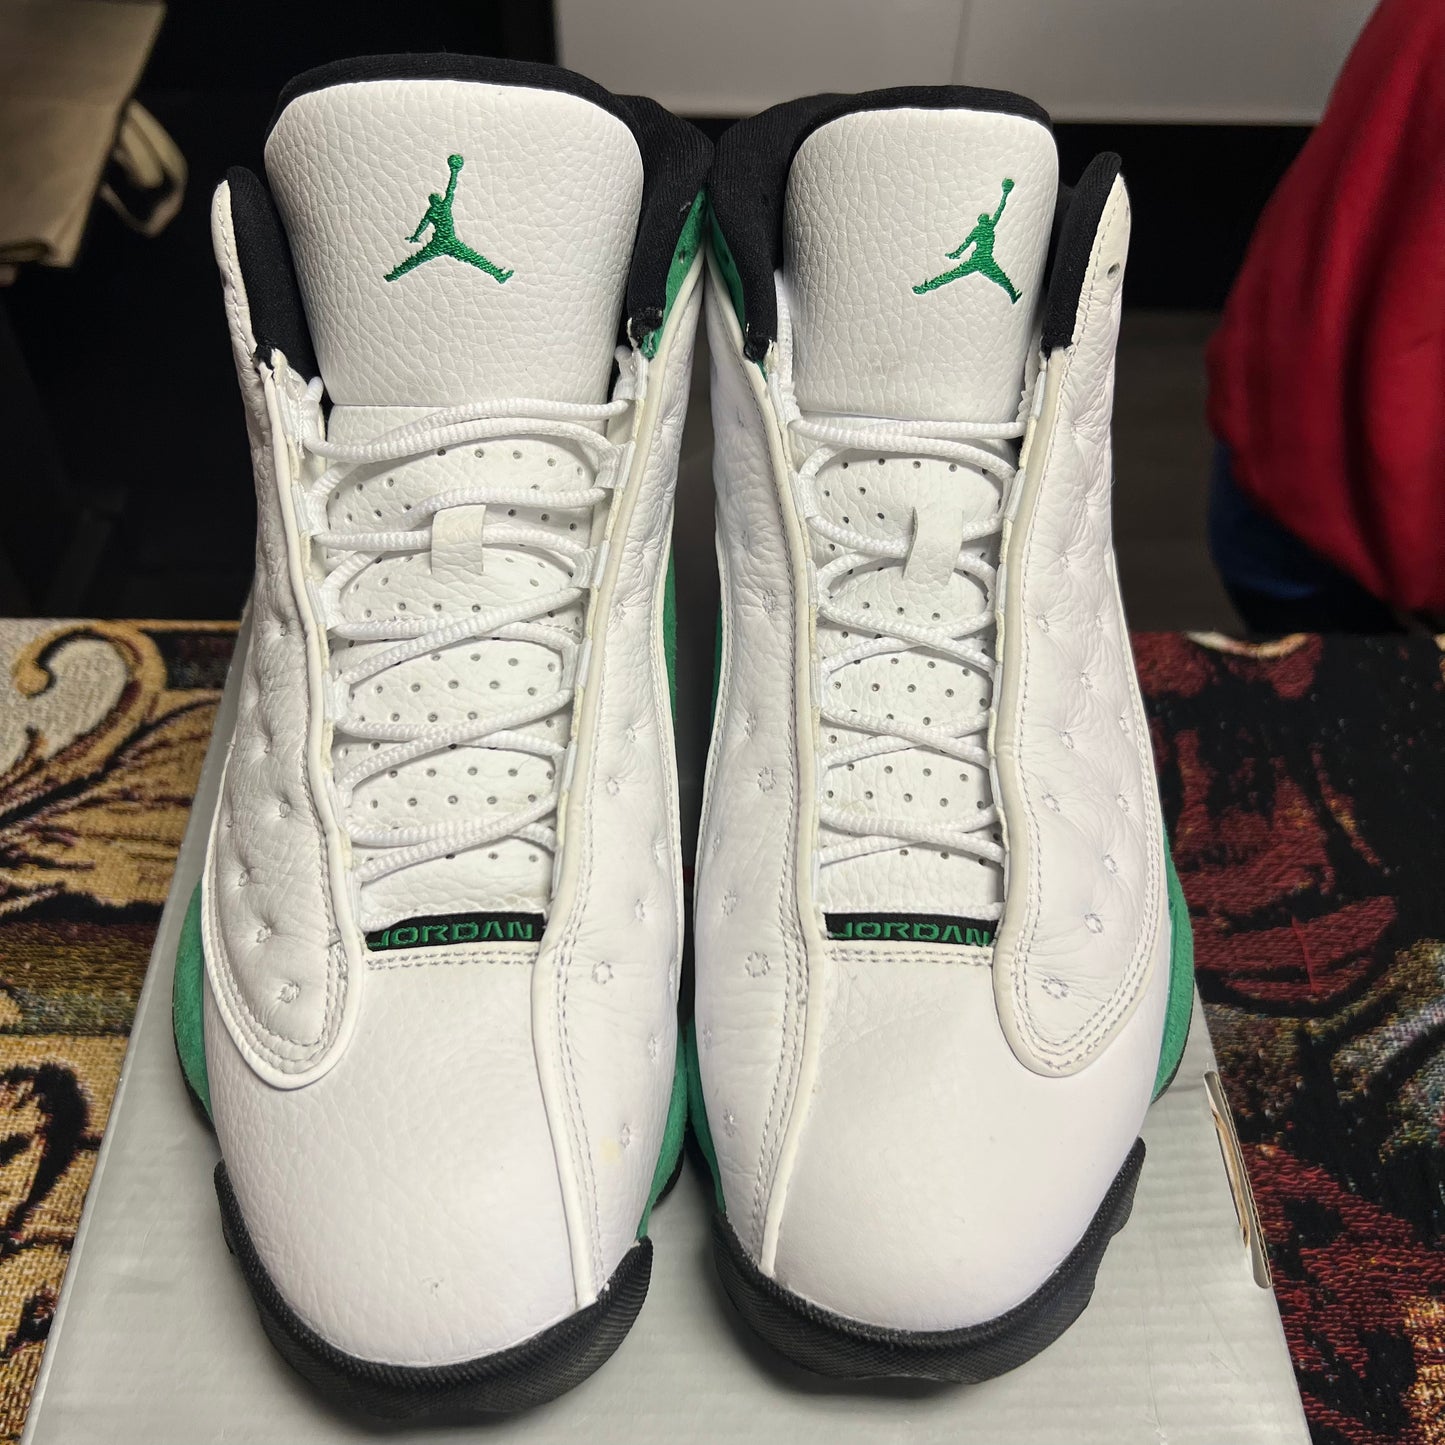 Jordan 13 Retro White Lucky Green - Preloved